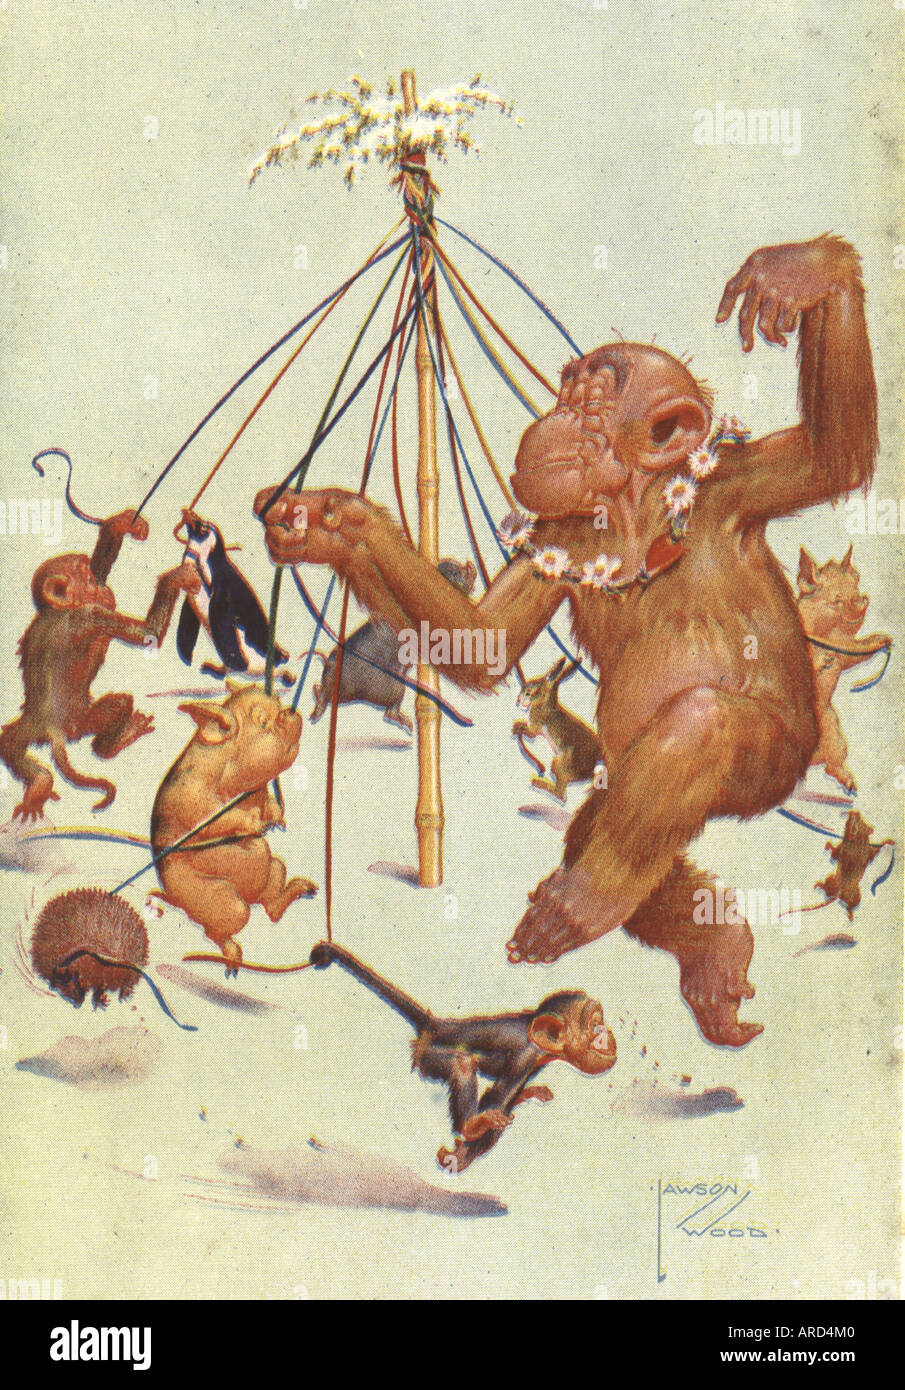 Fumetto immagini da cartolina di ballare tutto il maypole dall artista Lawson legno circa 1935 Foto Stock